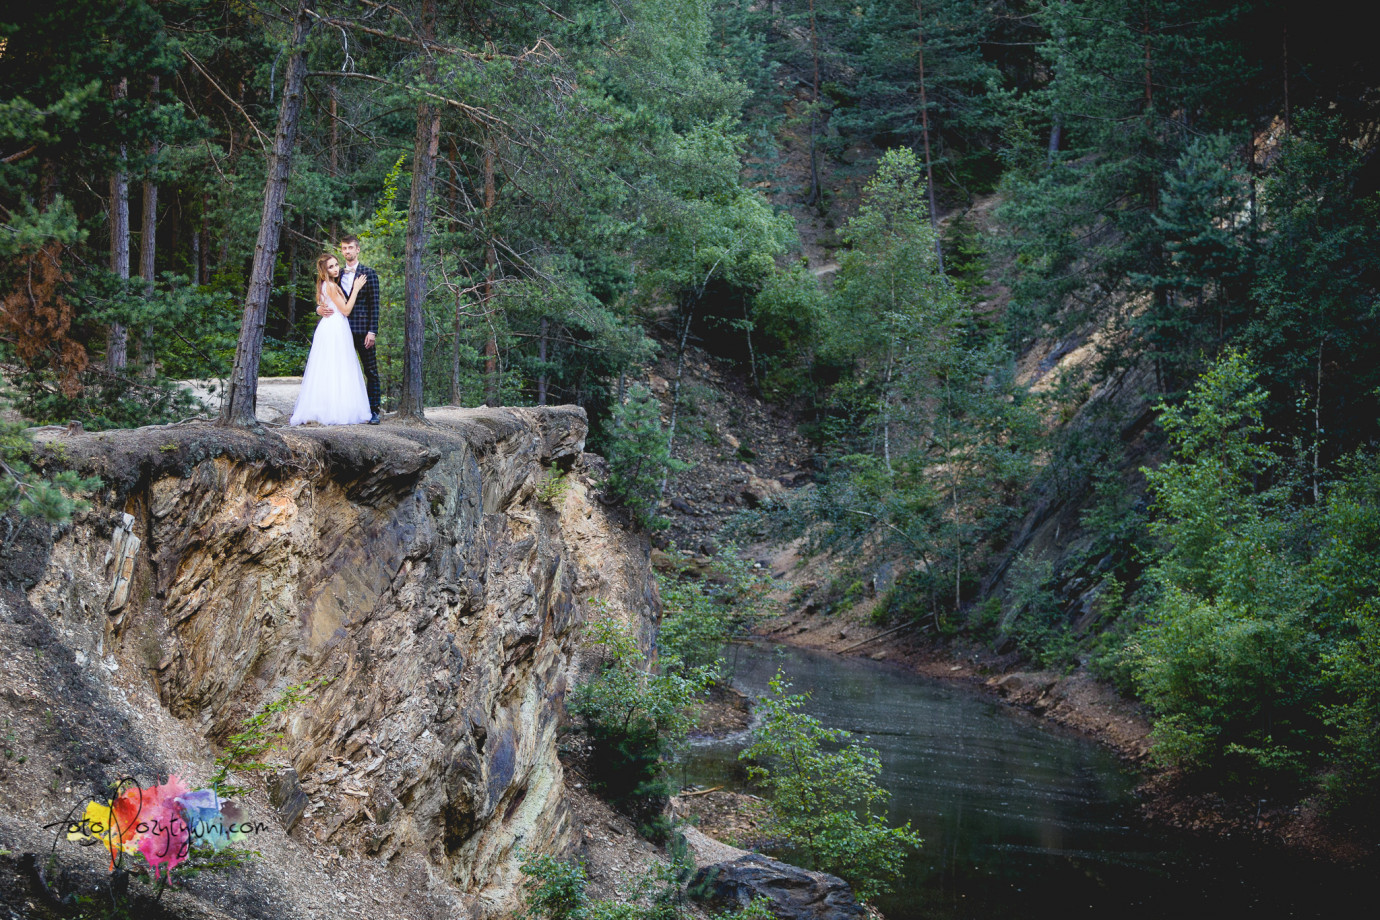 fotograf sieradz fotopozytywni portfolio zdjecia slubne inspiracje wesele plener slubny sesja slubna